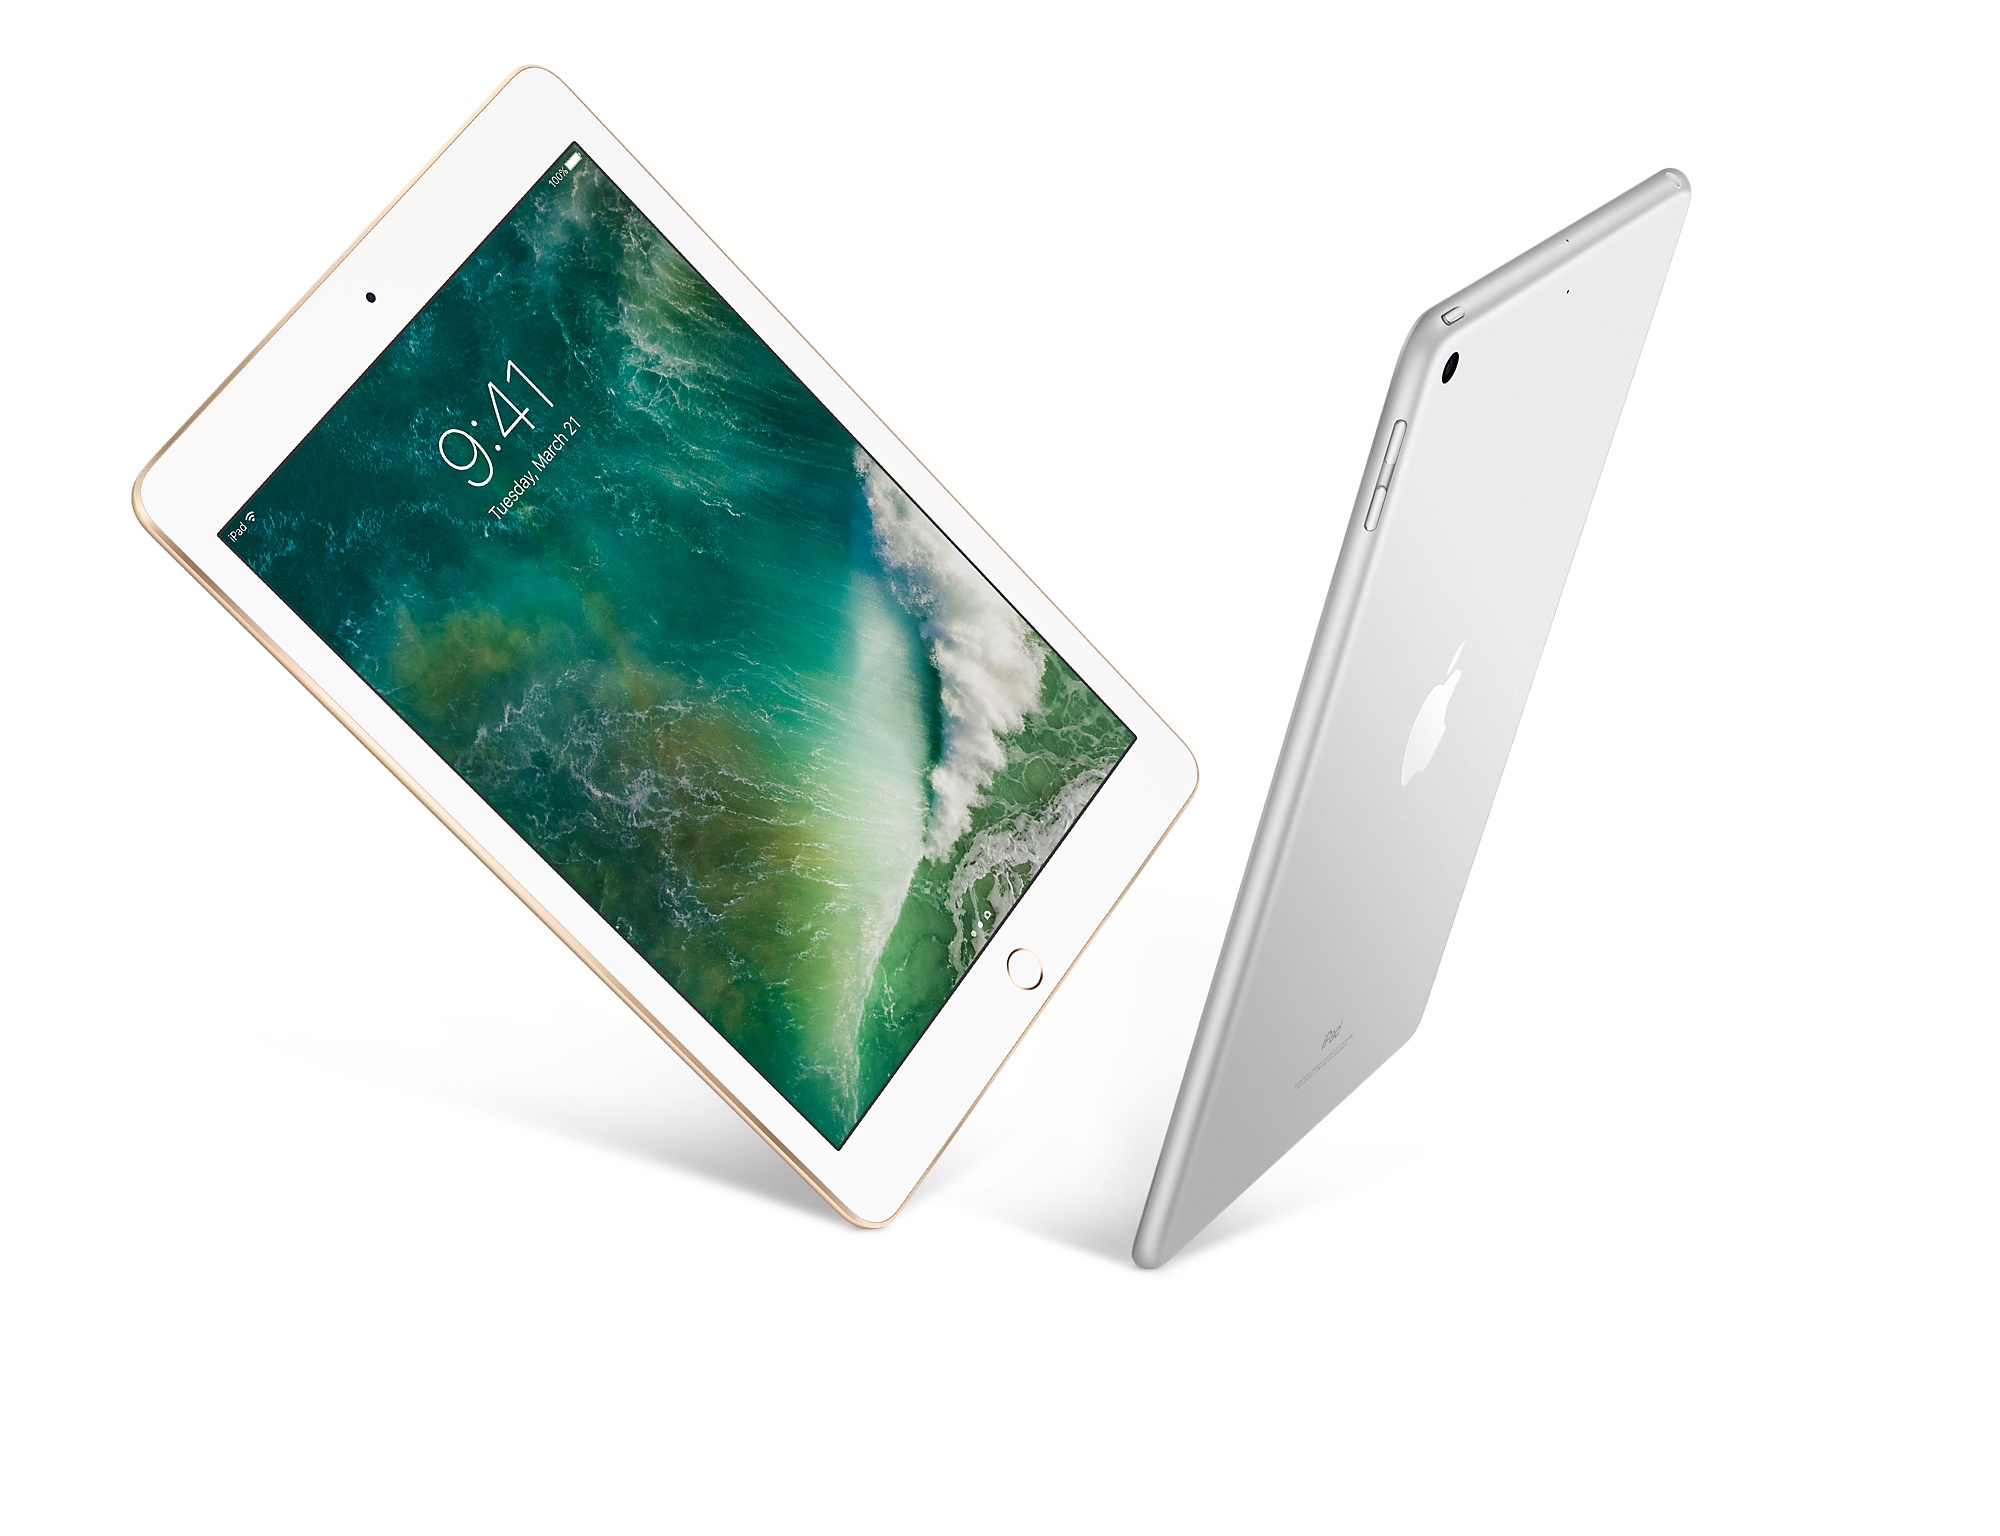 iPad (32GB, Wi-Fi + Cellular, Space Gray)